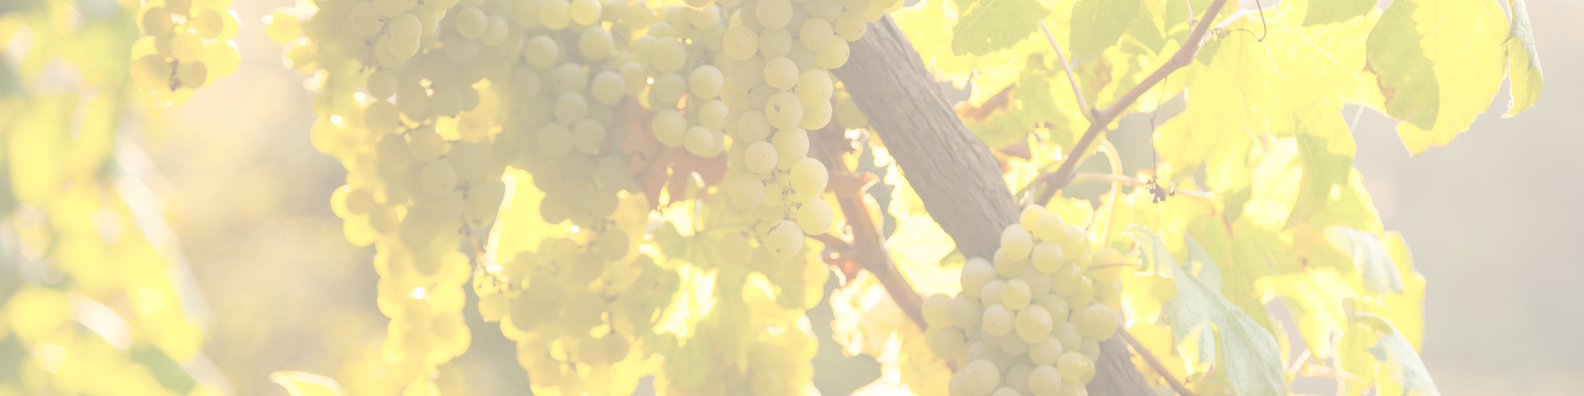 Image de vignes et raisins blancs